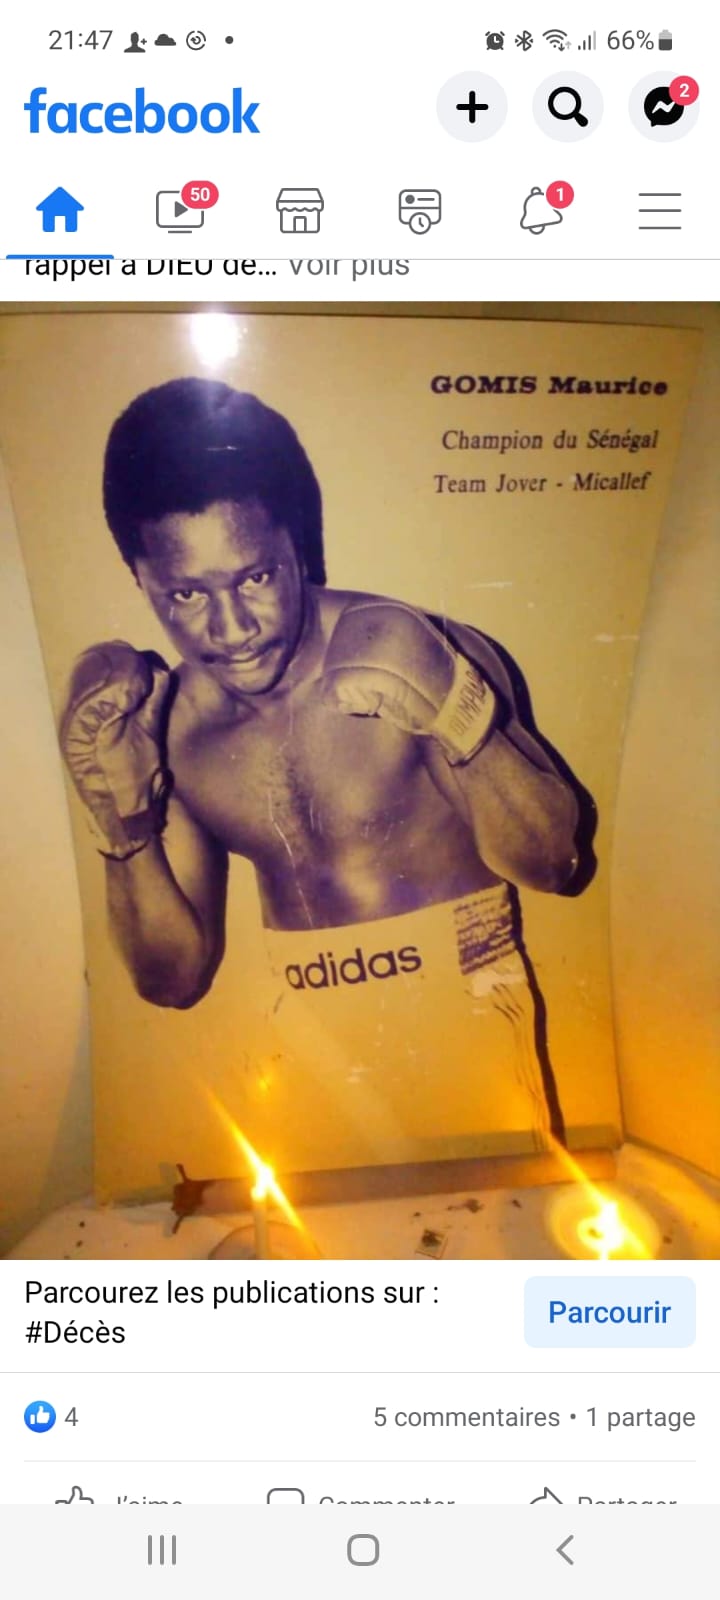 Nécrologie: Maurice Gomis champion de boxe des années 80 est décédé à Paris, inhumation vendredi prochain 